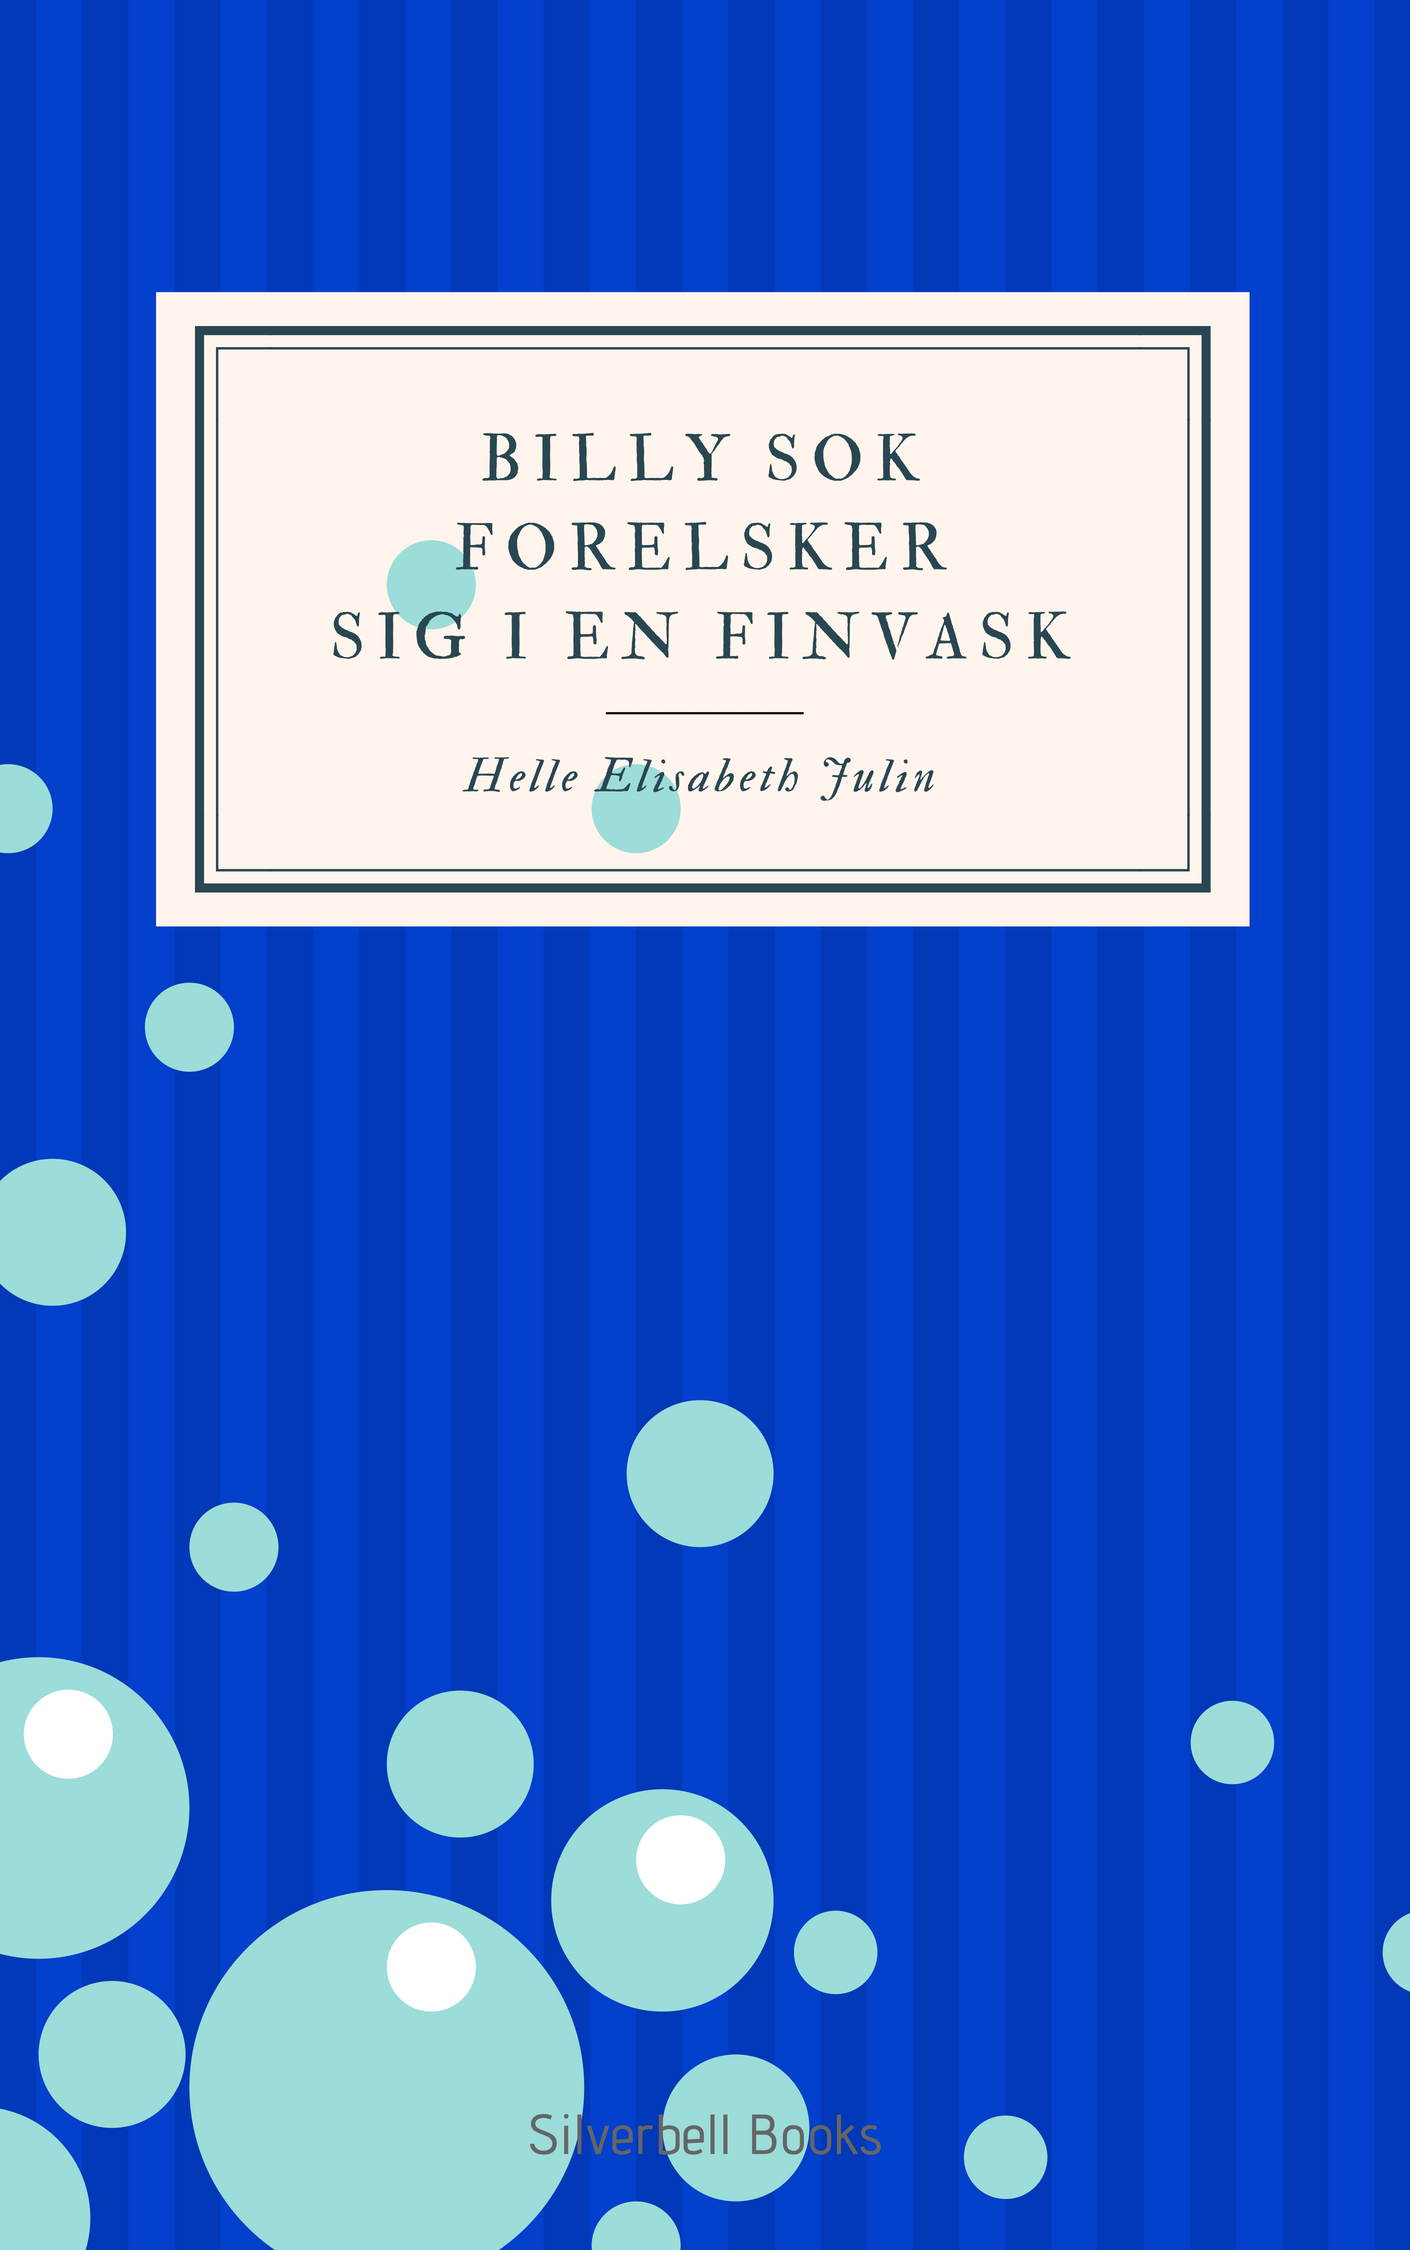 Copy of Billy Sok forelsker sig i en finvask